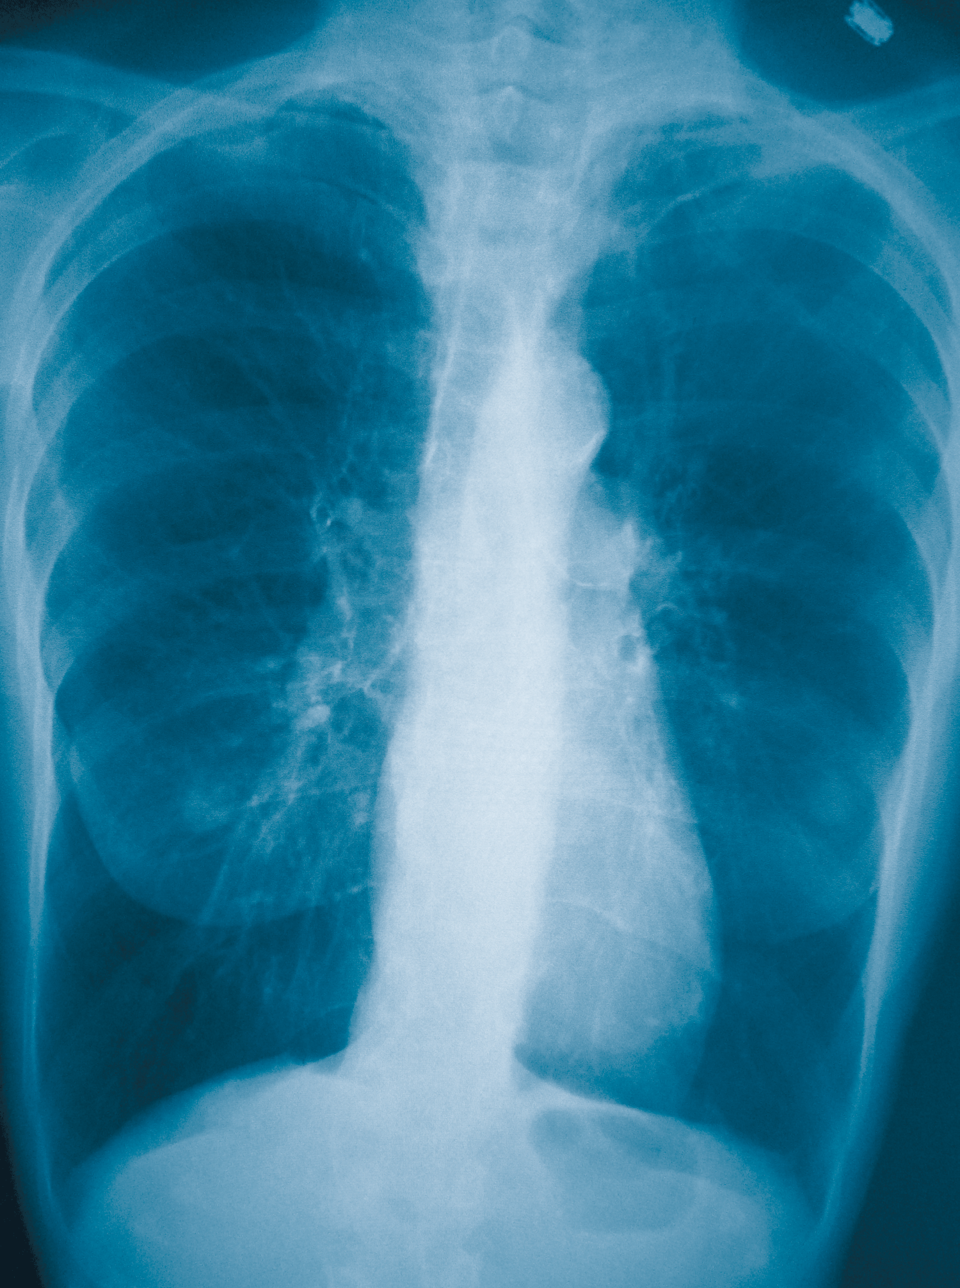 Die Therapie der COPD gestaltet sich immer
komplexer. ICS kommen nur noch für bestimmte Patienten infrage.